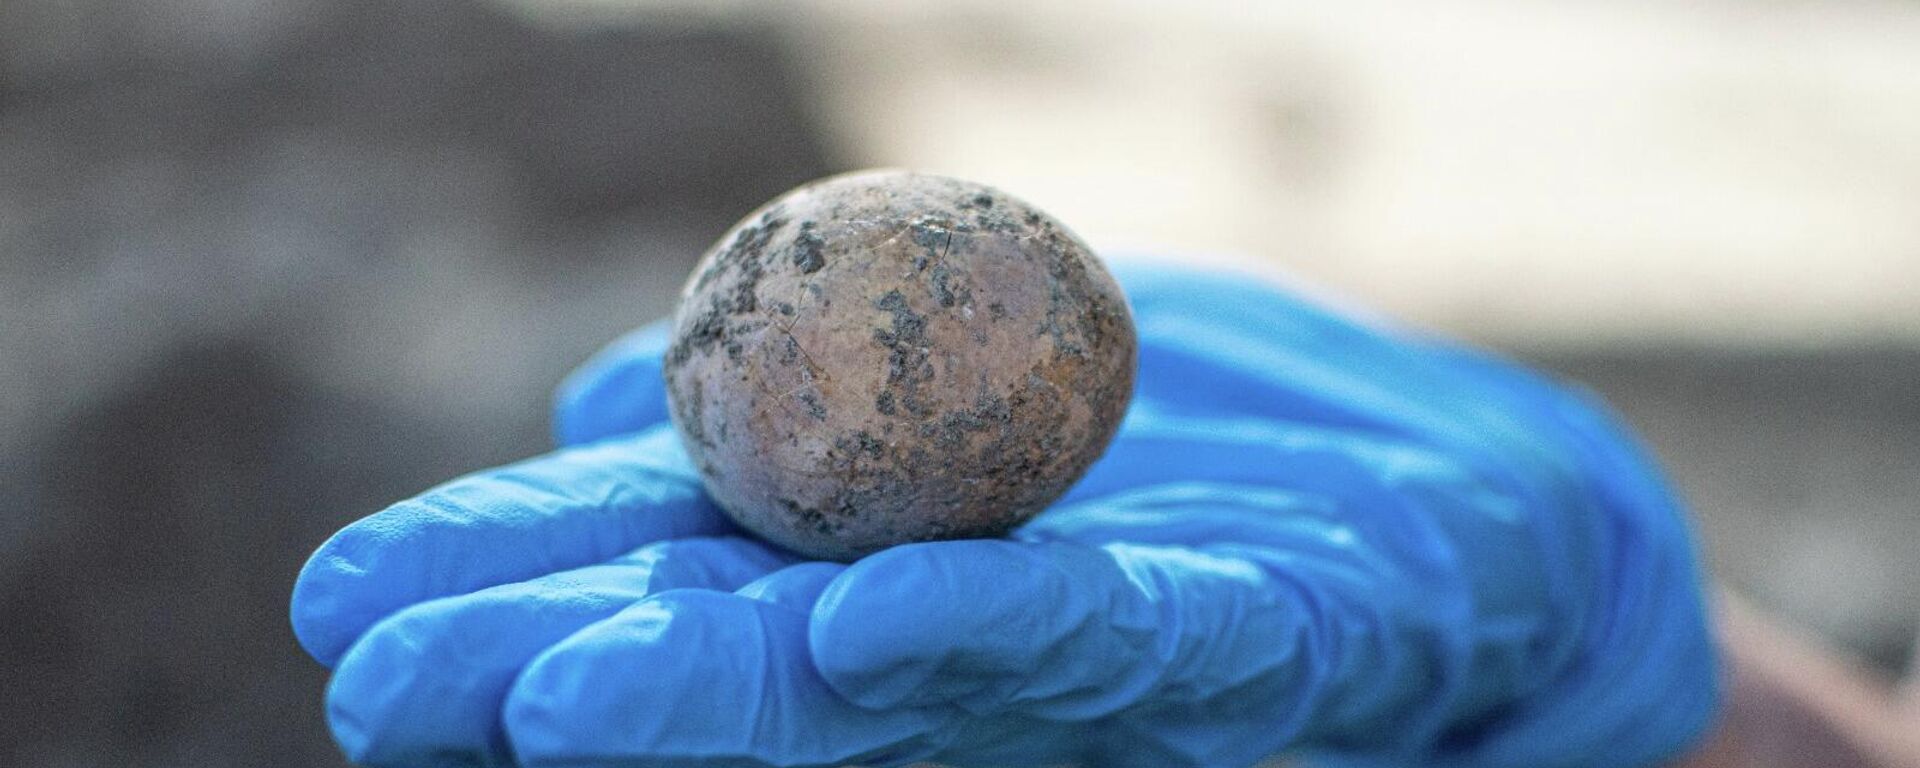 Un huevo de 1.000 años encontrado en Israel - Sputnik Mundo, 1920, 11.06.2021